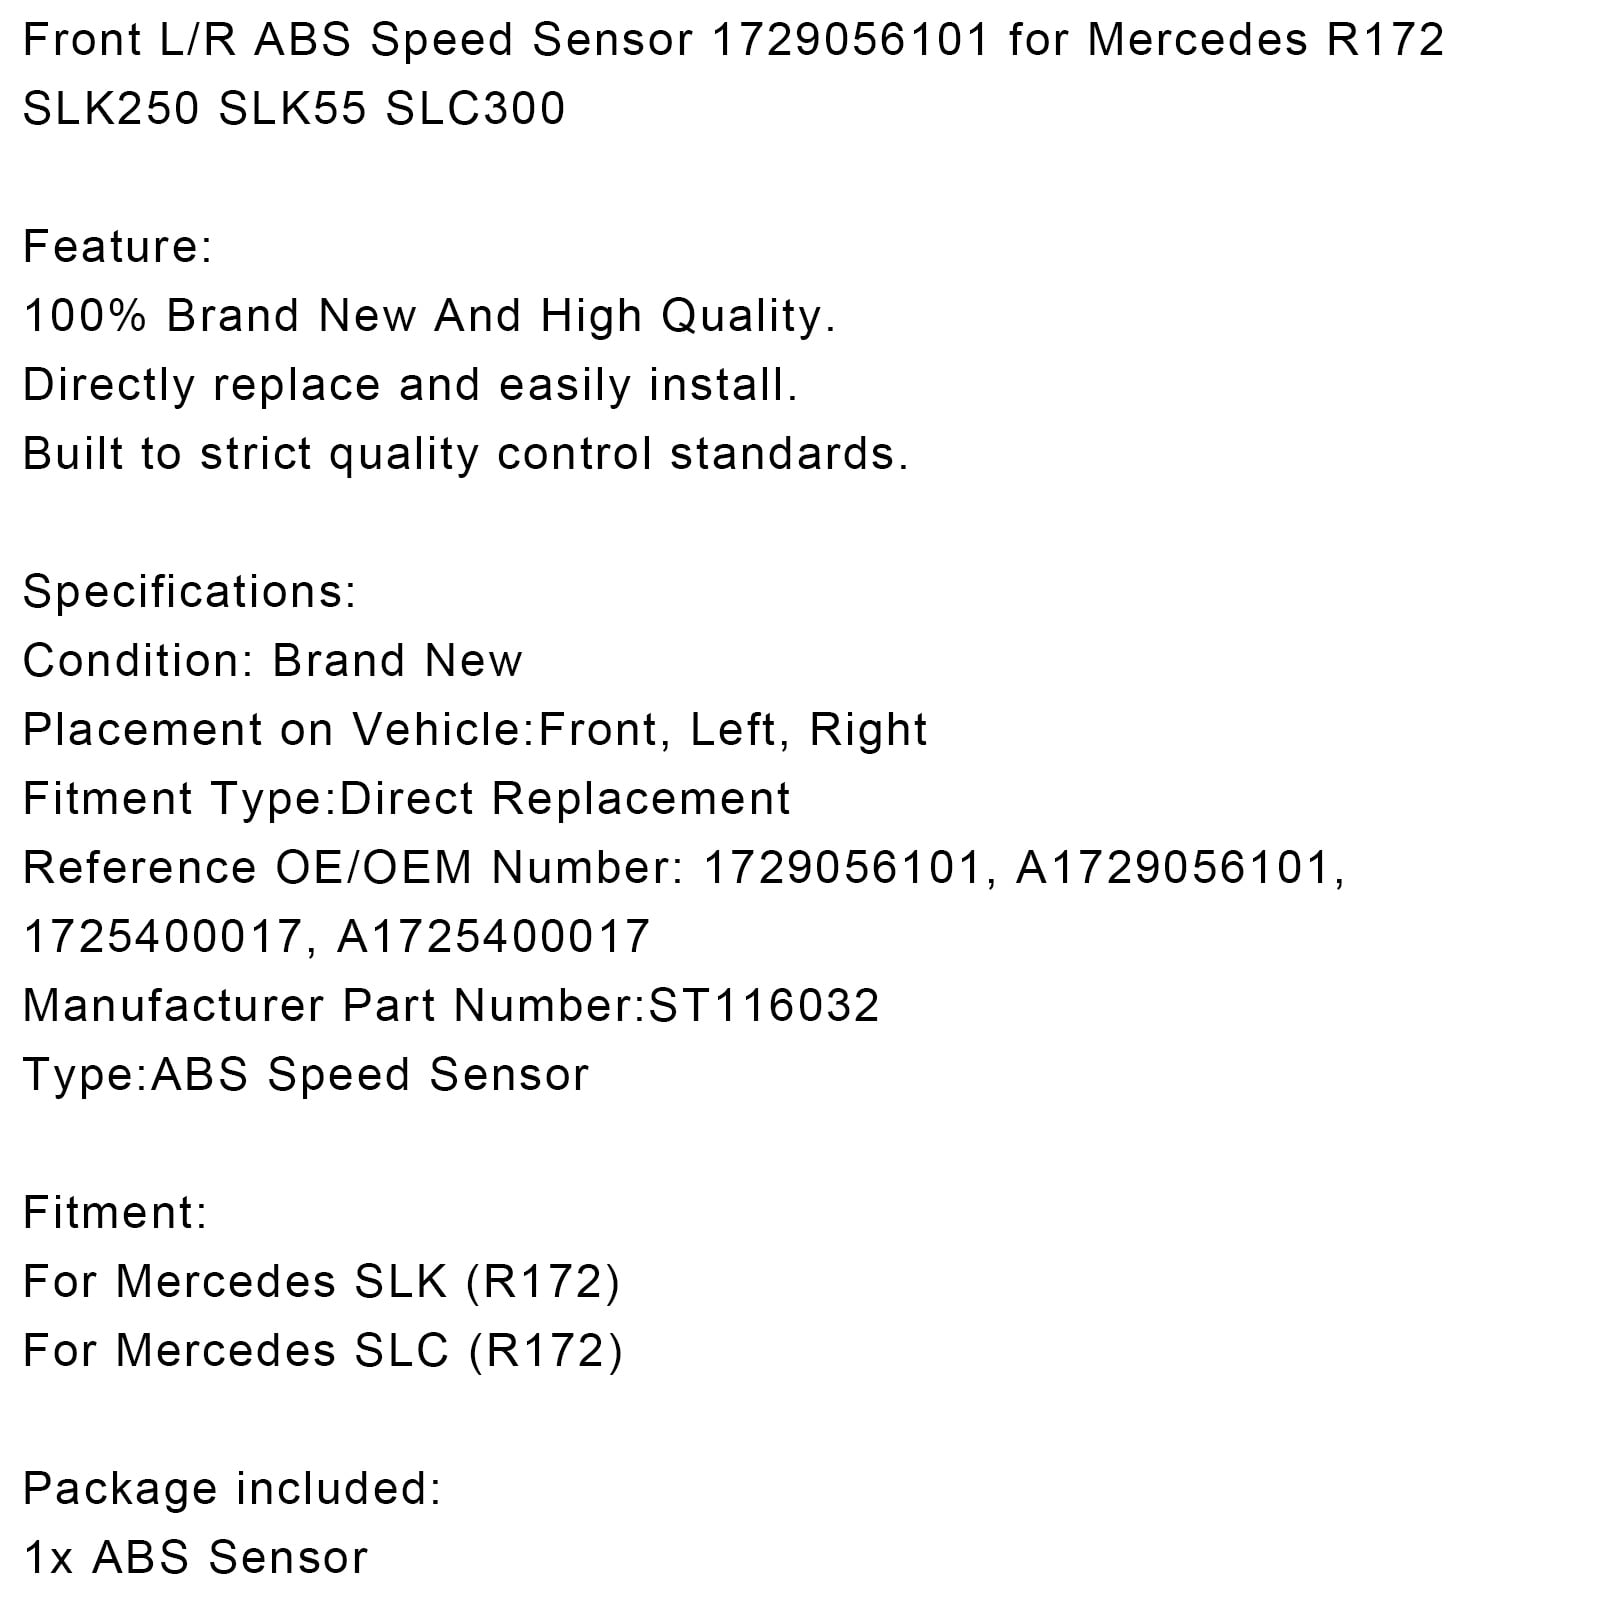 Front L/R ABS Speed Sensor for Mercedes 1729056101 SLC300 SLC43AMG SLK250 SLK55